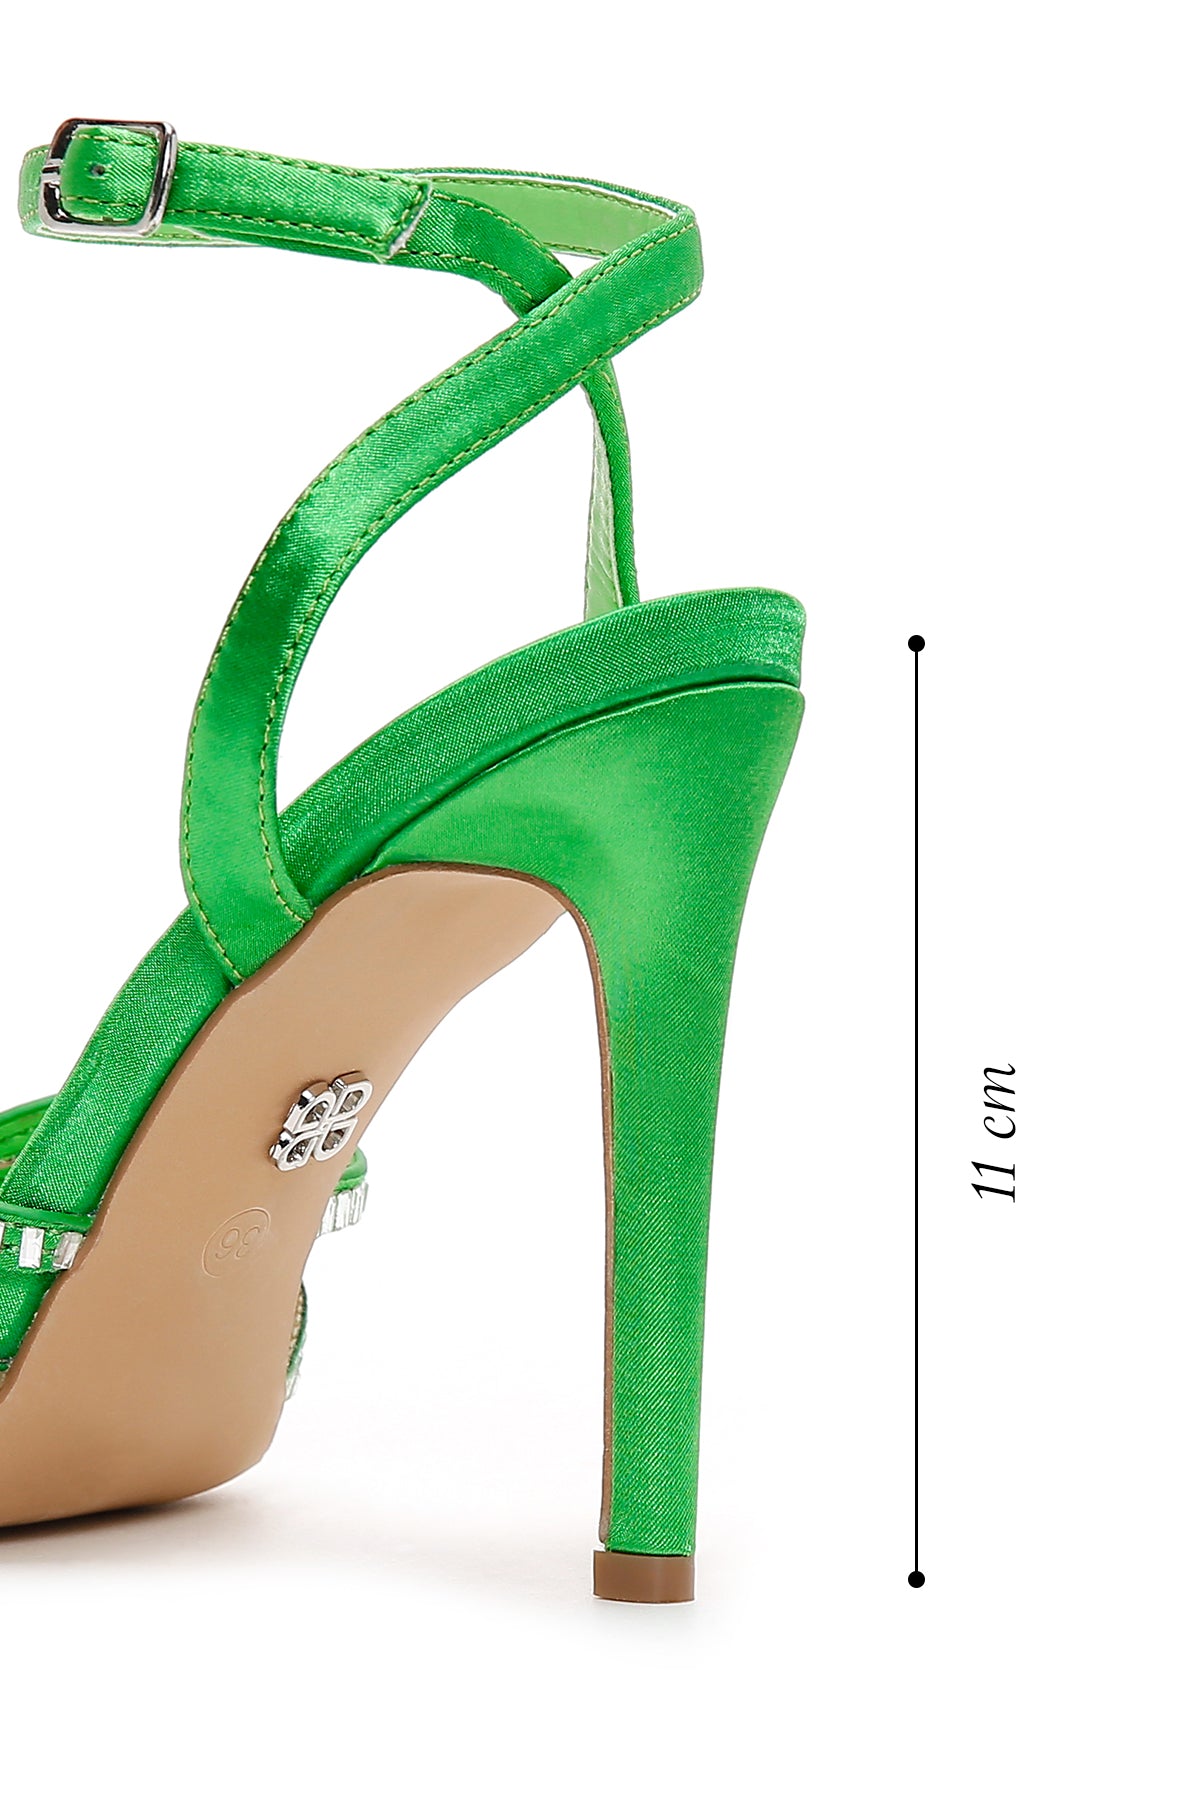 Kadın Yeşil Taşlı İnce Topuklu Sandalet